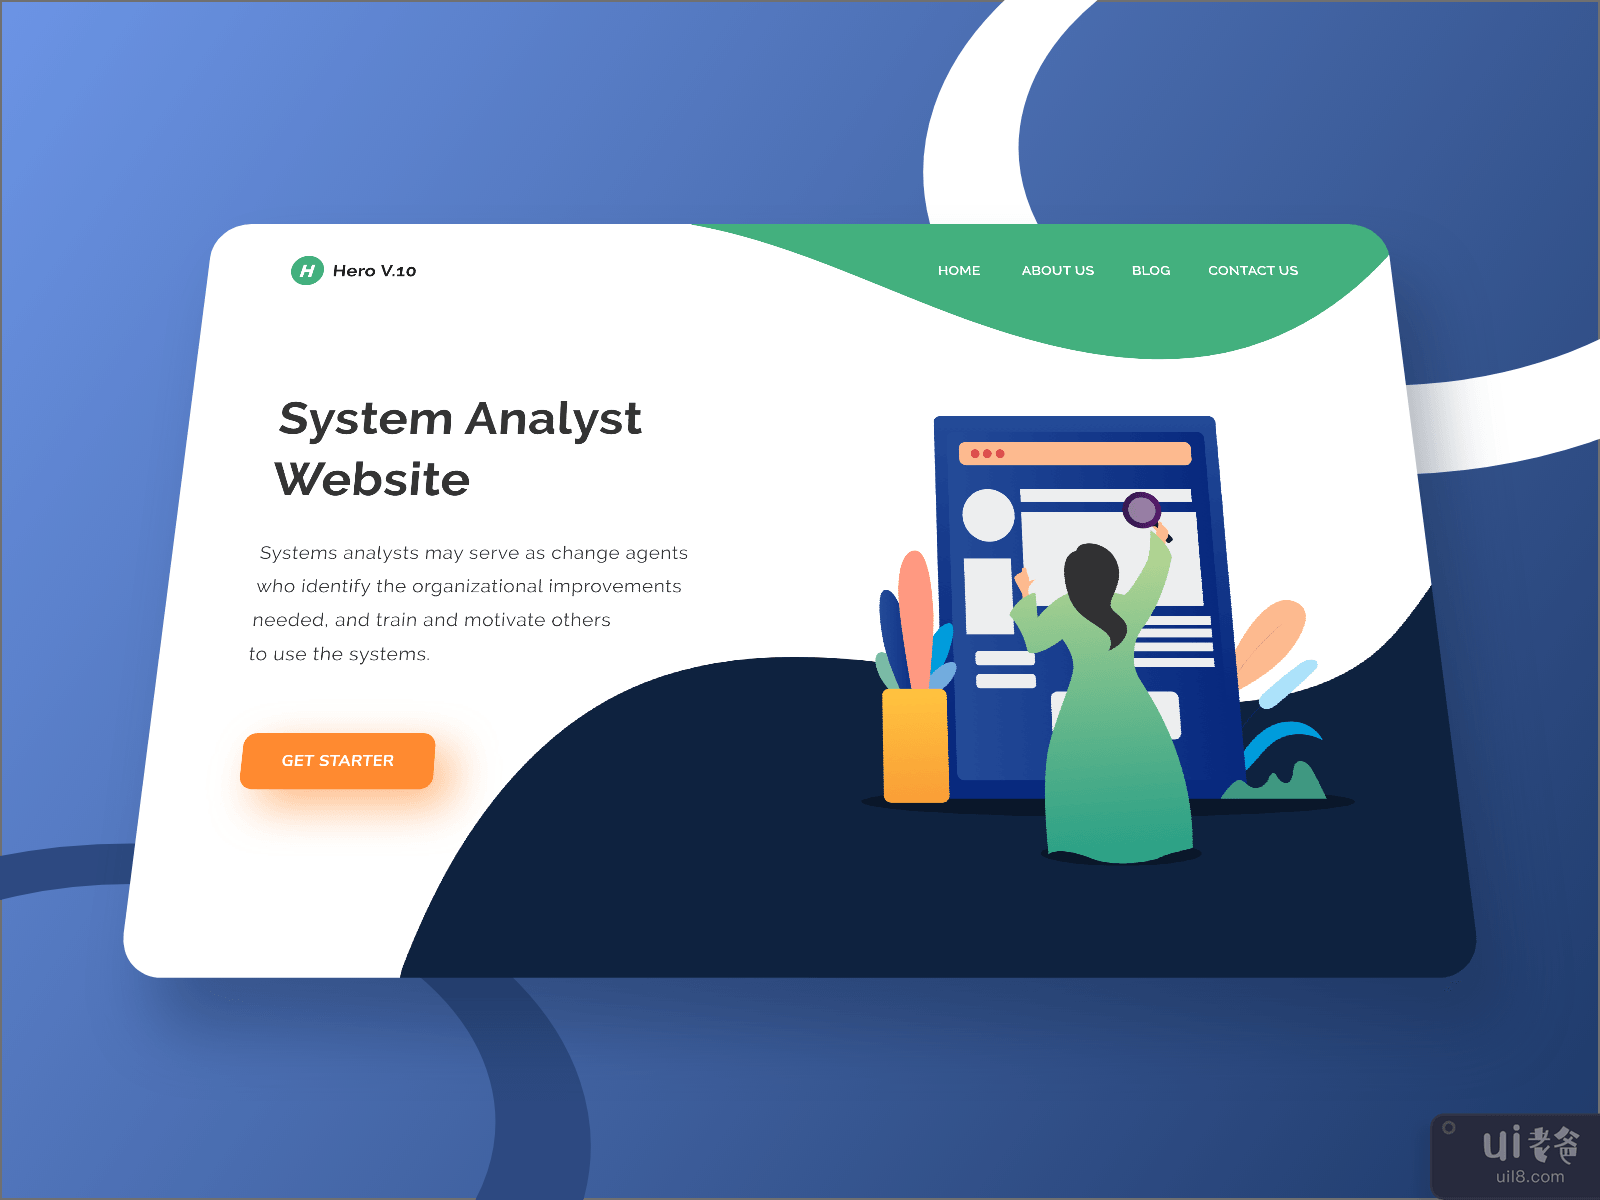 Hero V.10 System Analyst Website